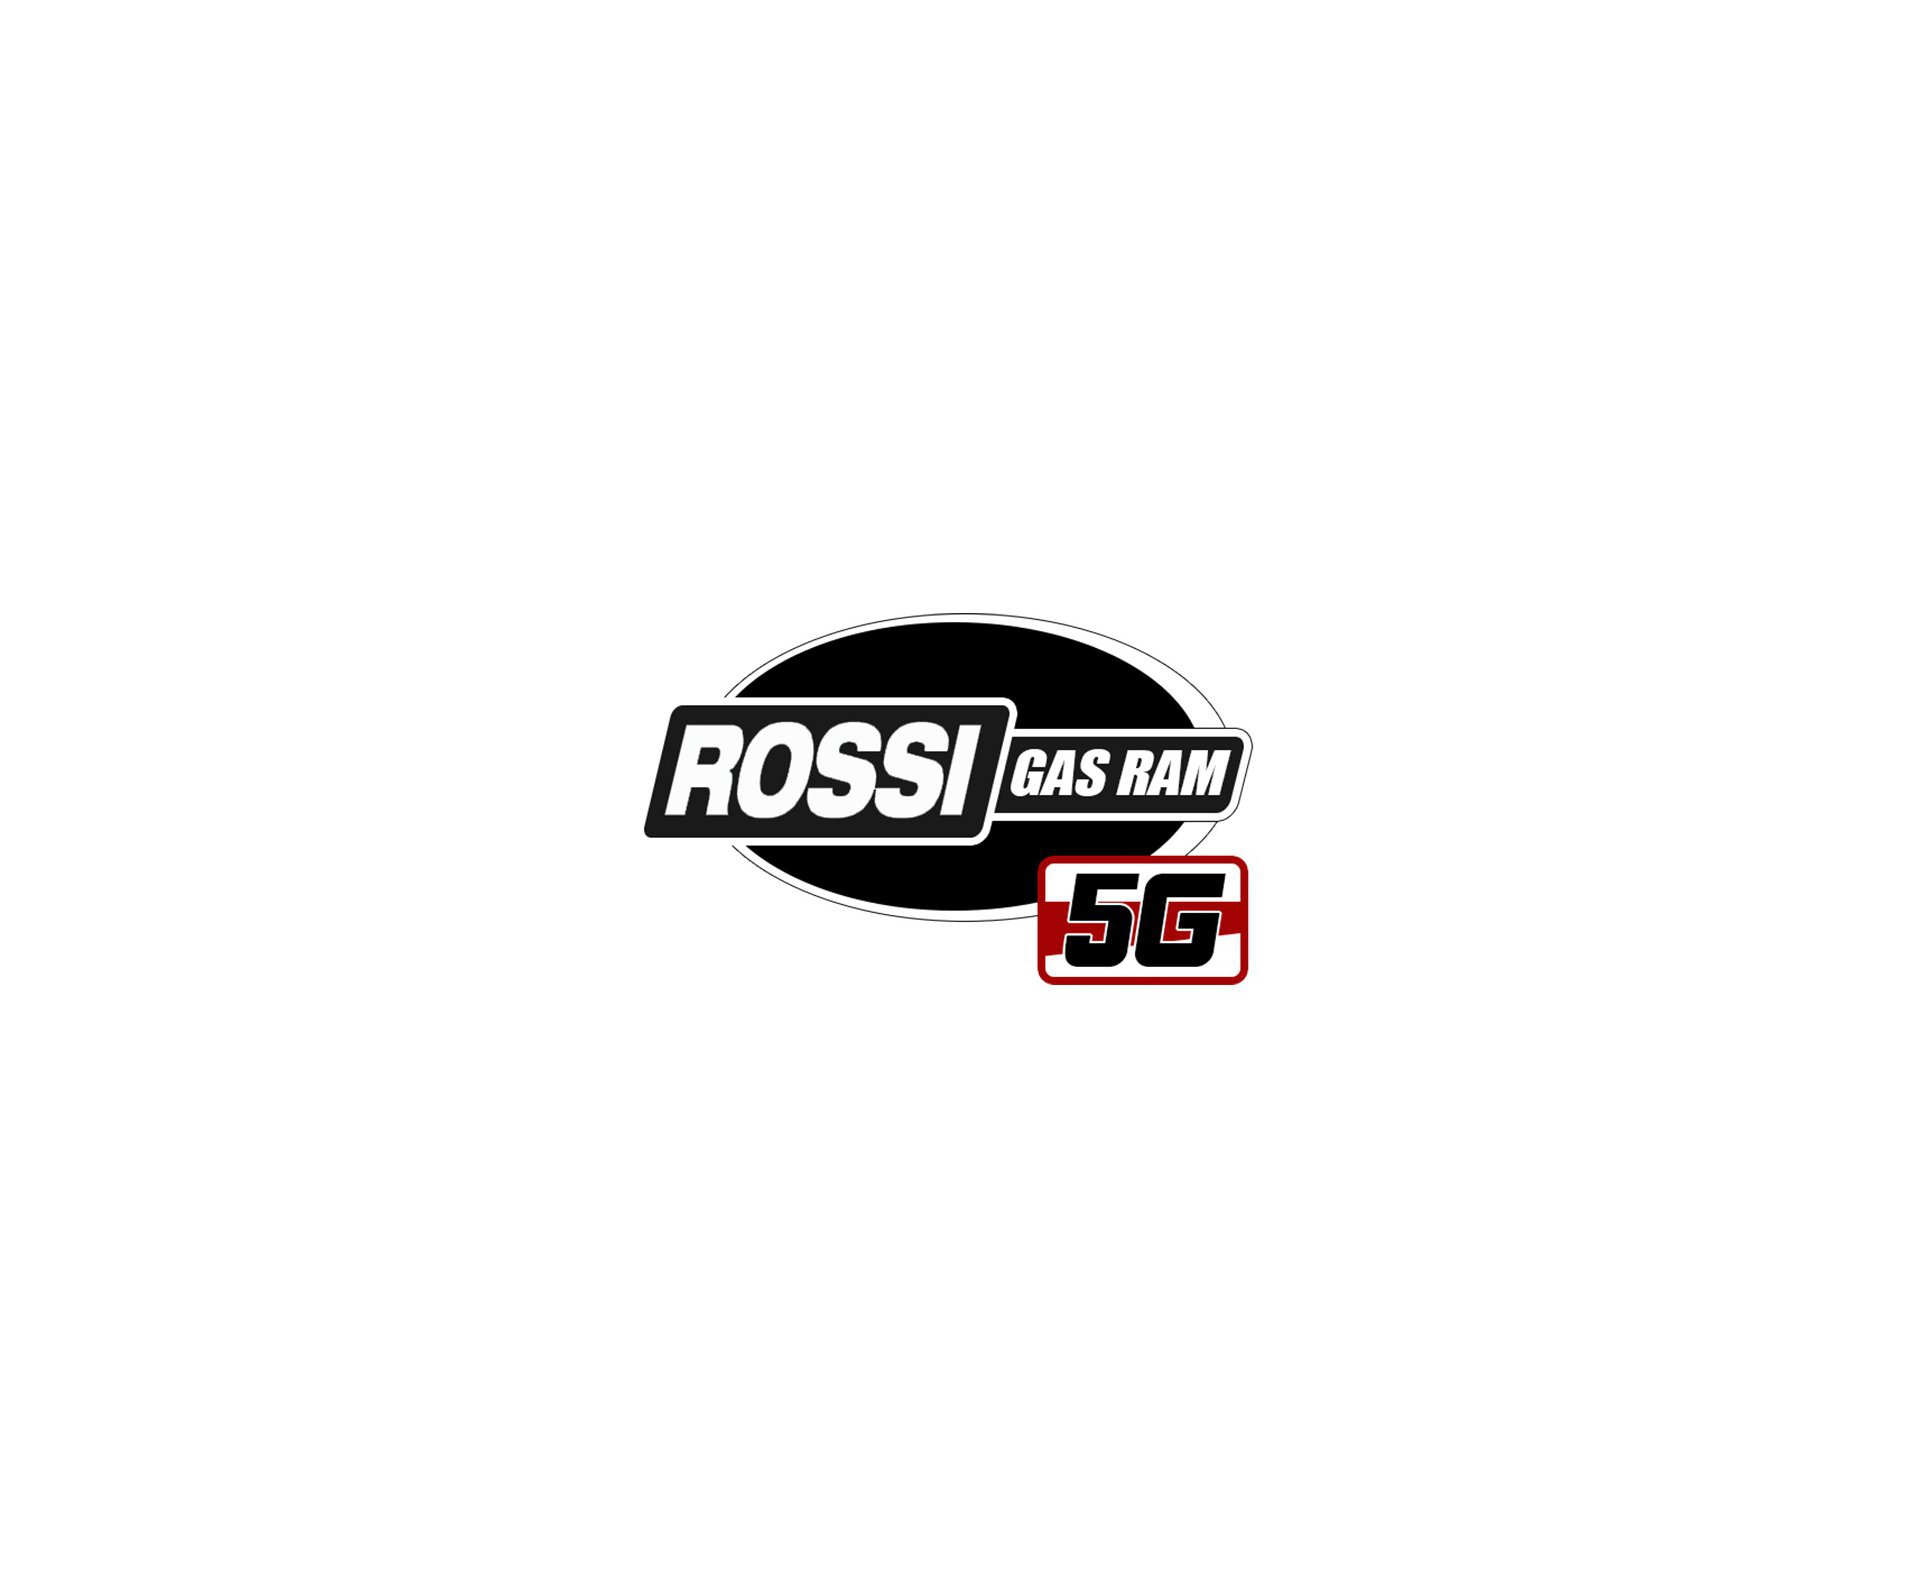 Carabina de Pressão Rossi Dione 5G Gás Ram 60kg 5,5mm + Capa + Luneta 4x32 + Bandoleira + Chumbinho + Alvos